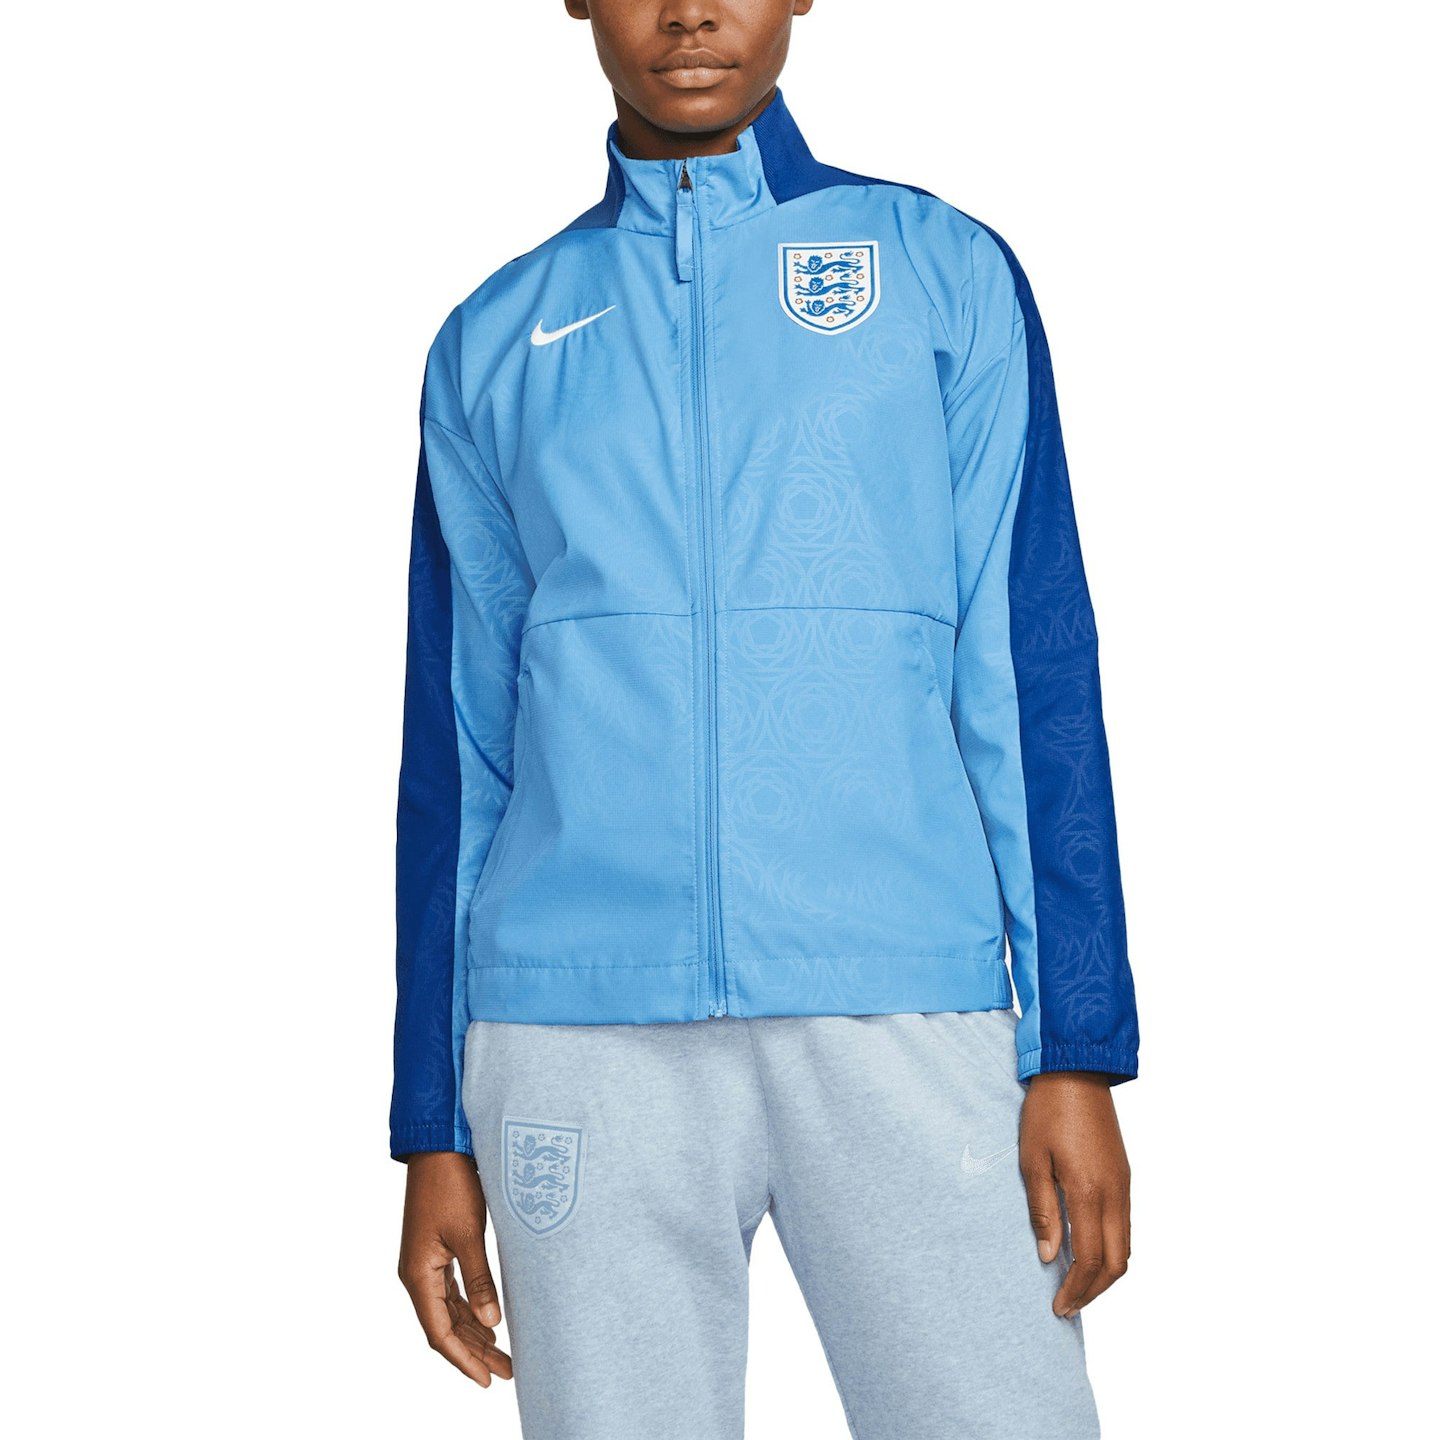 England Women's Nike Anthem Jacket